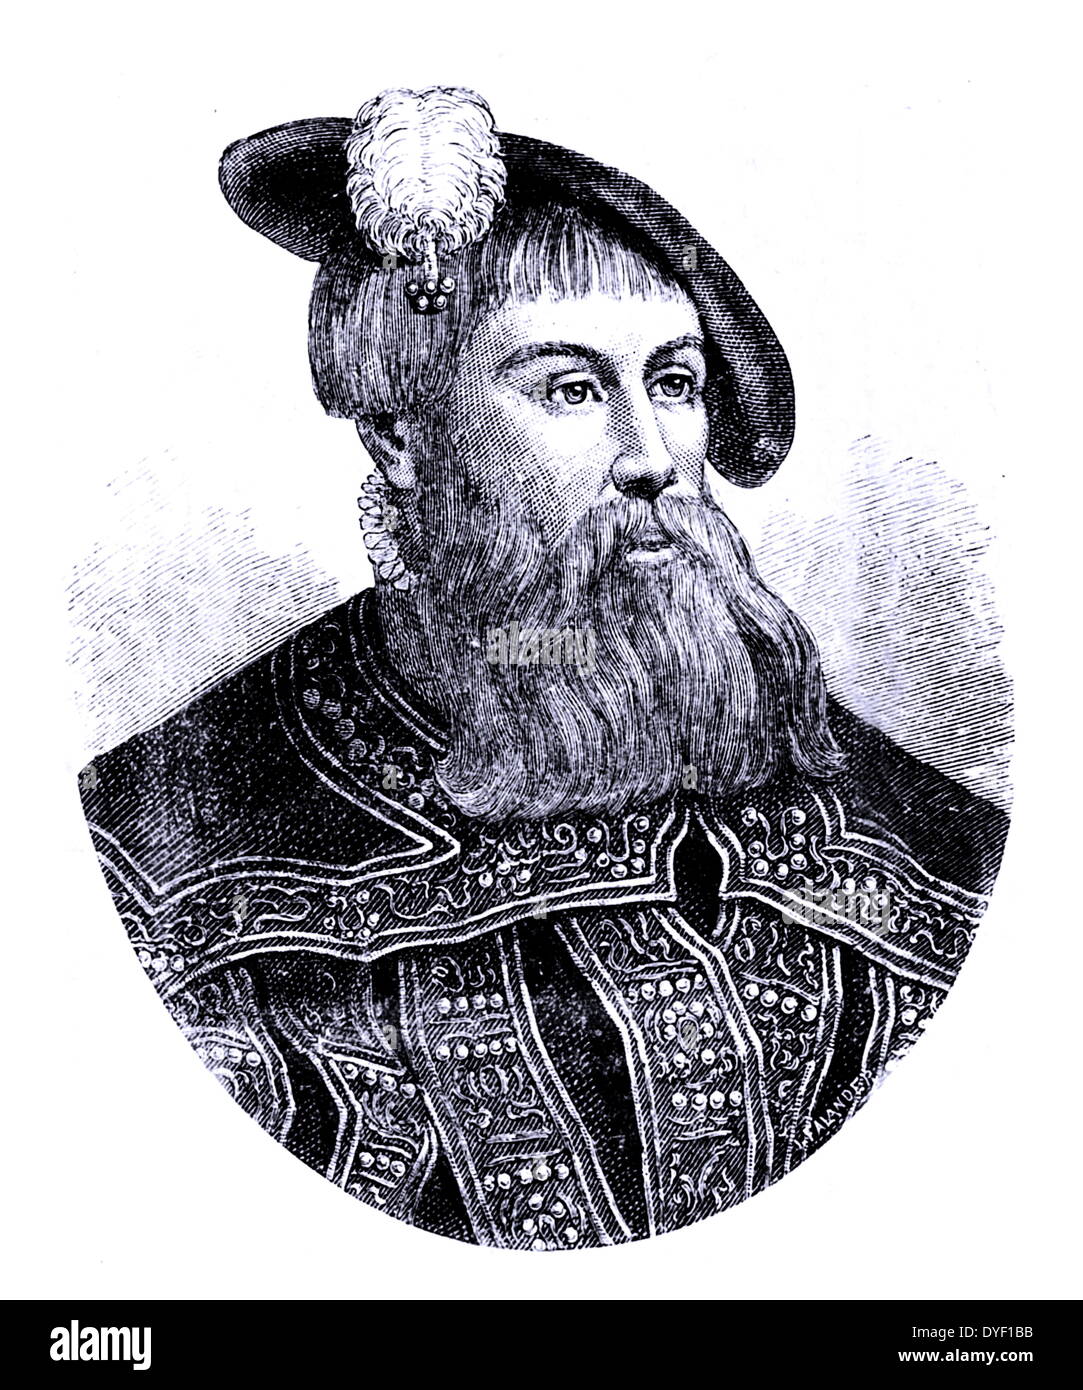 Portrait de l'illustre Gustav I de Suède, né Gustav Eriksson. Roi de Suède à partir de 1523 jusqu'à sa mort. A vécu entre le 12 mai 1496 - 29 septembre 1560 membre de la noble famille Vasa. Banque D'Images